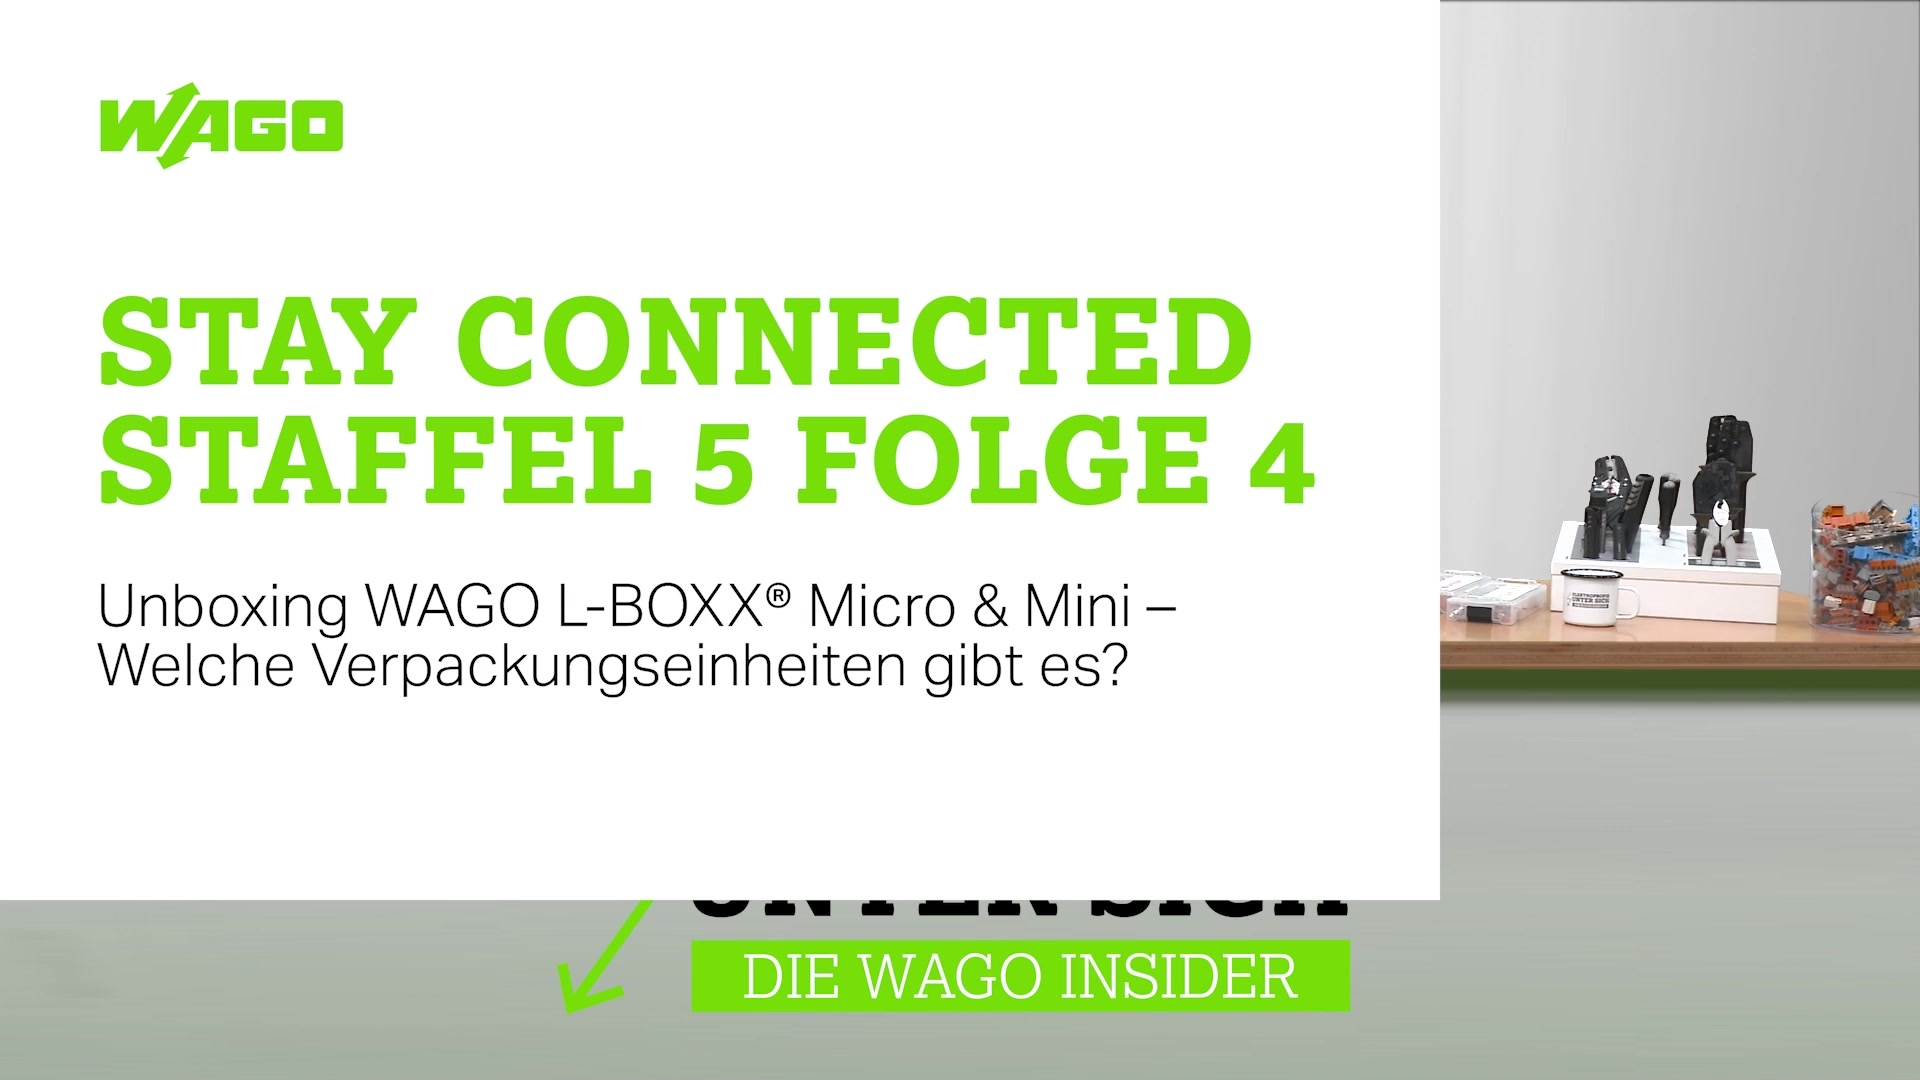 <p>Unboxing WAGO L-BOXX Micro und Mini – welche Verpackungseinheiten gibt es?</p>